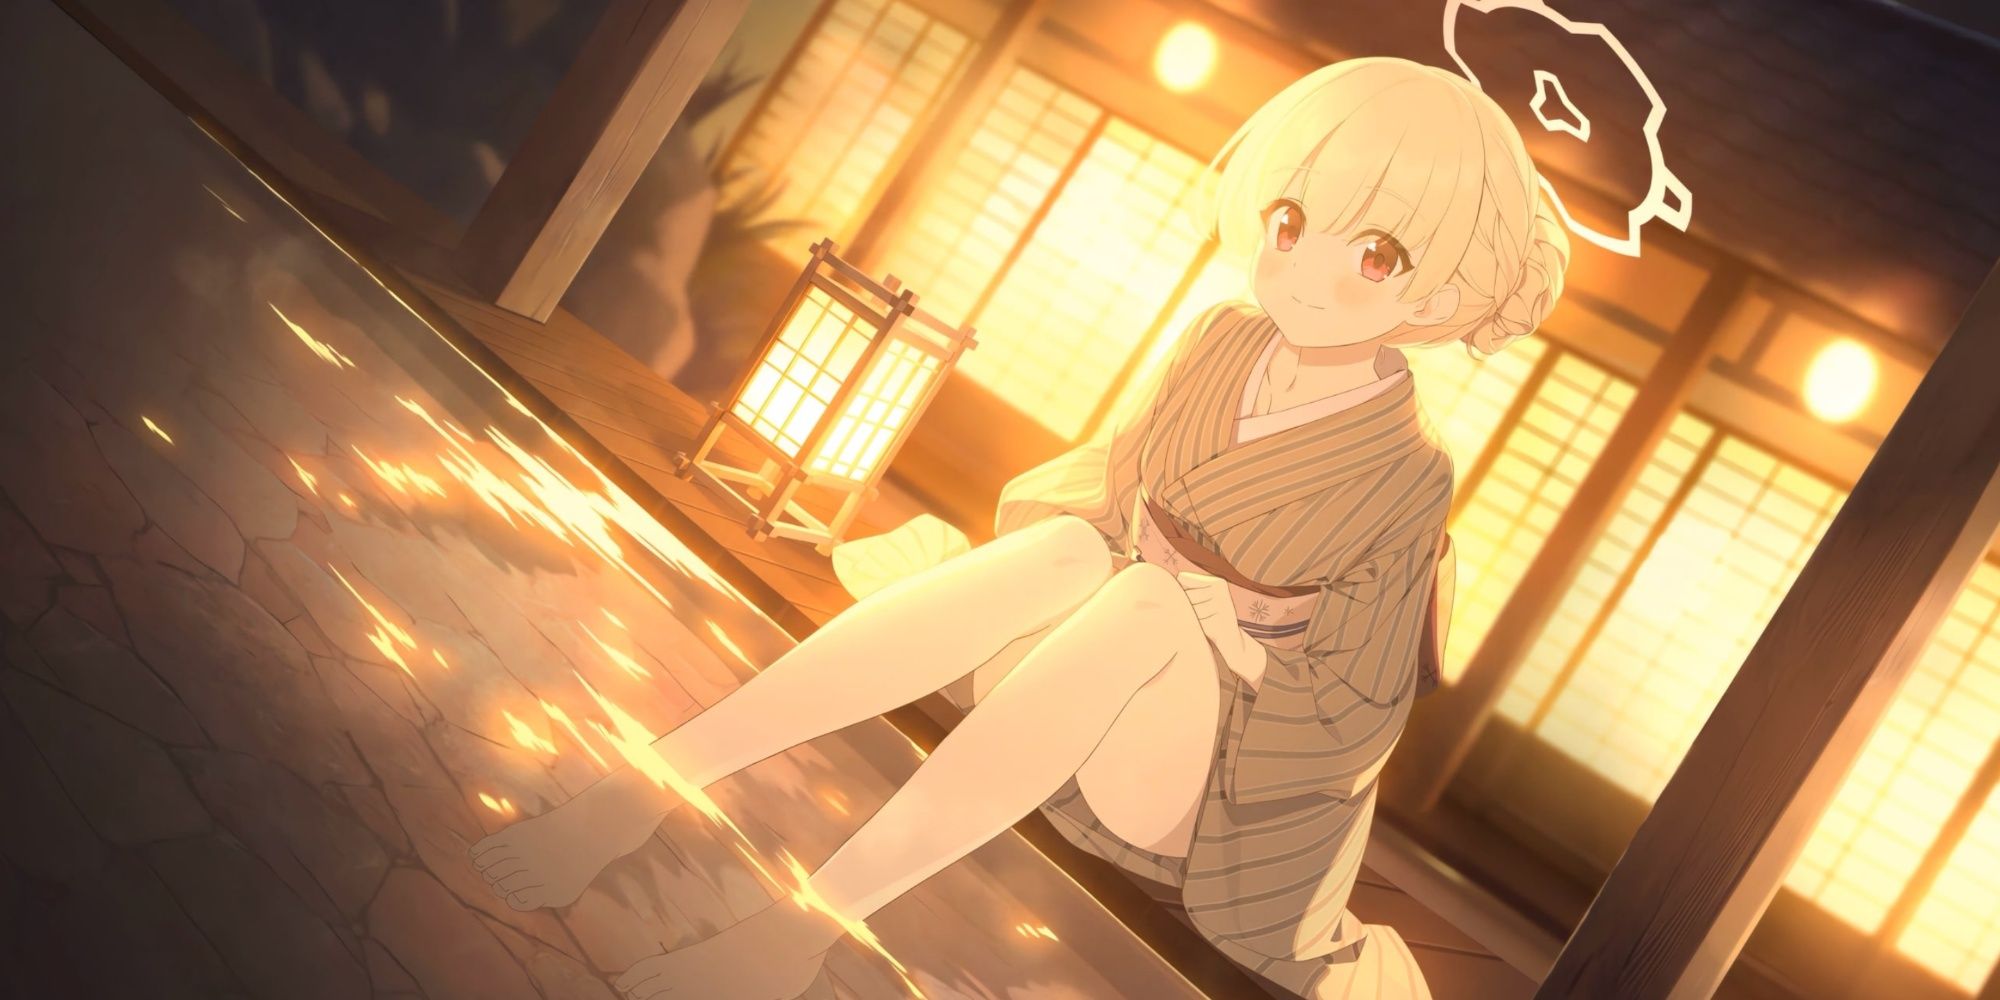 Nodoka (Hot Spring) wearing Yukata dipping her feet in hot spring